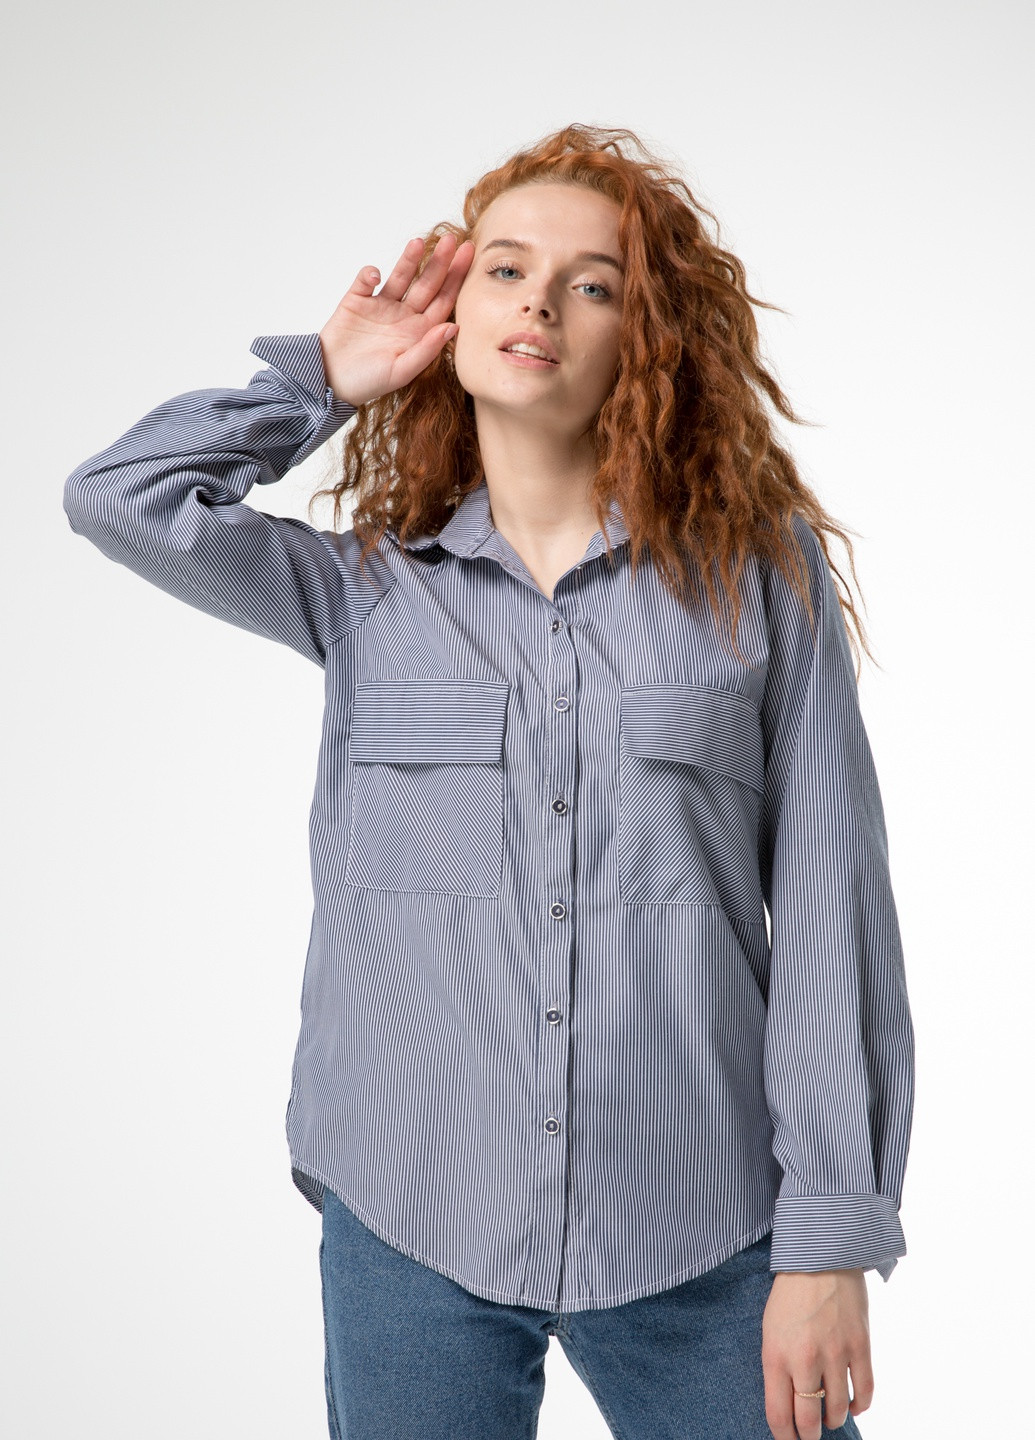 Синяя классическая женская рубашка в мелкую полосочку INNOE Рубашка